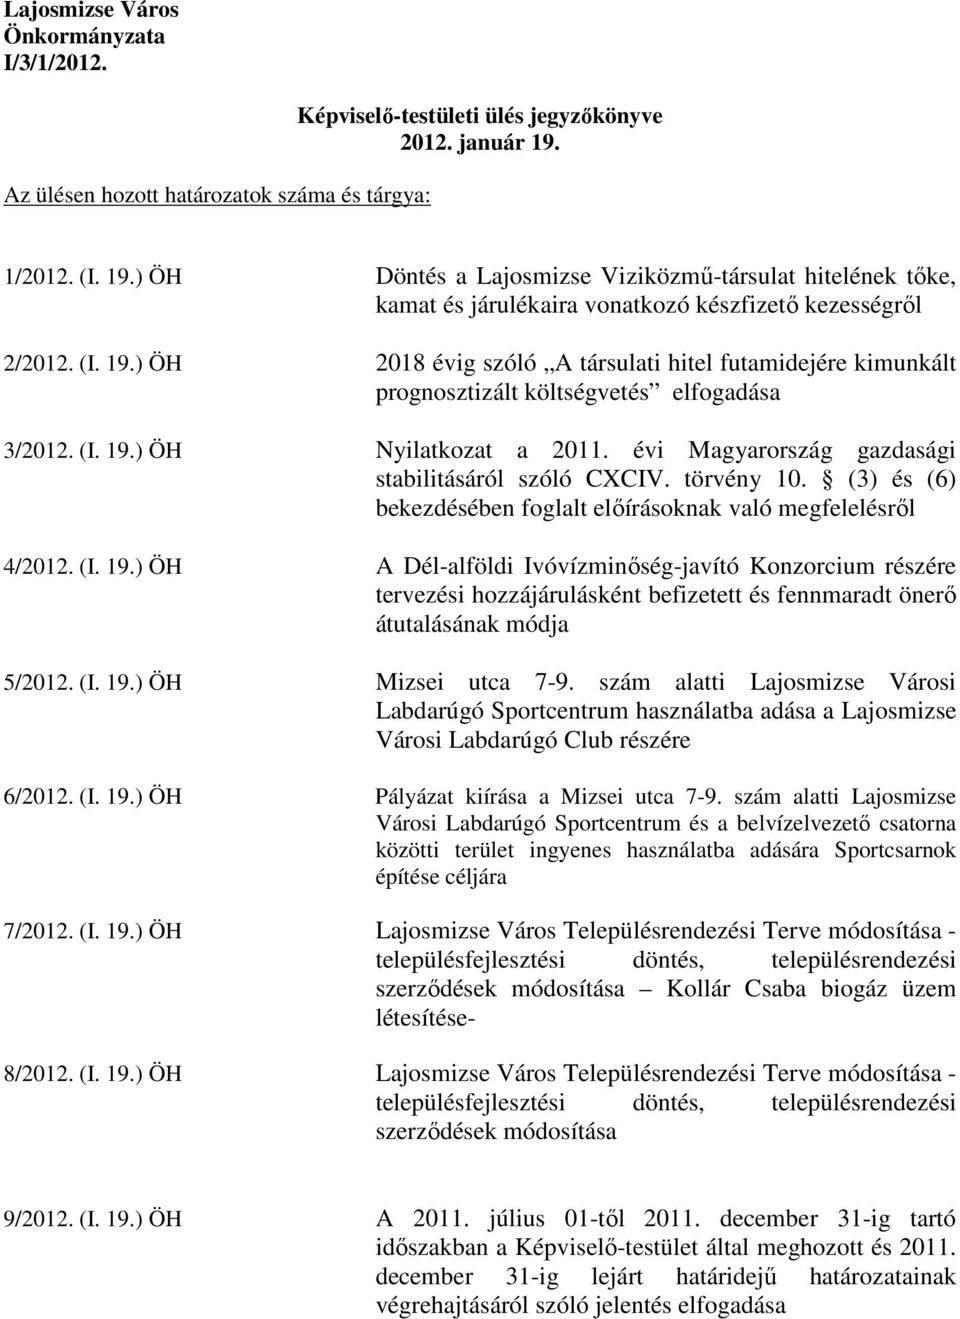 (I. 19.) ÖH Nyilatkozat a 2011. évi Magyarország gazdasági stabilitásáról szóló CXCIV. törvény 10. (3) és (6) bekezdésében foglalt elıírásoknak való megfelelésrıl 4/2012. (I. 19.) ÖH A Dél-alföldi Ivóvízminıség-javító Konzorcium részére tervezési hozzájárulásként befizetett és fennmaradt önerı átutalásának módja 5/2012.